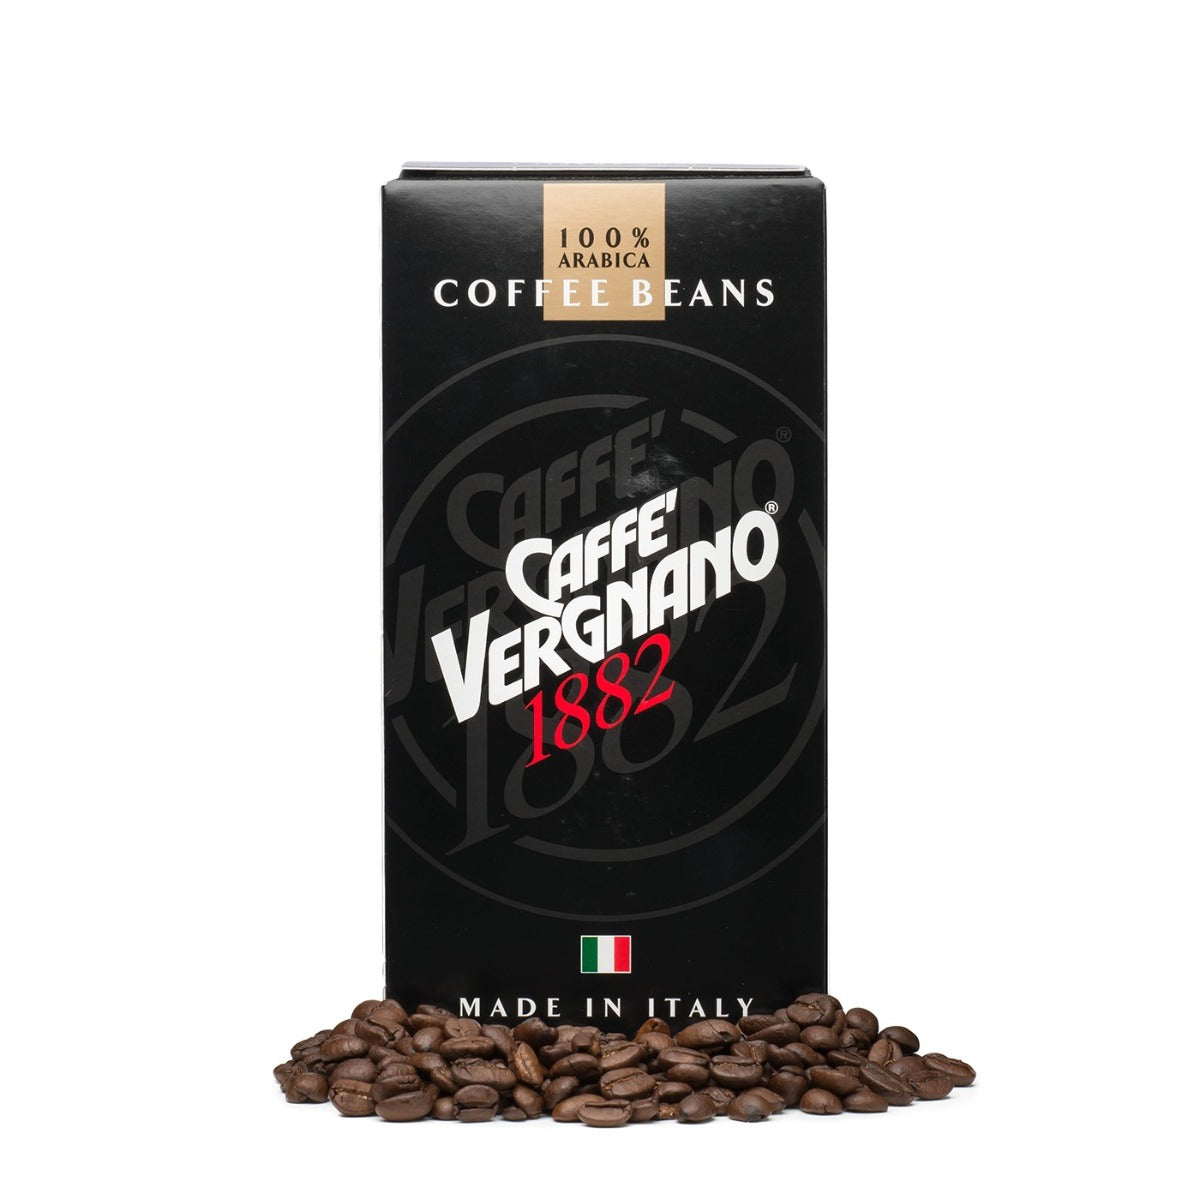 CAFE VERGNANO: Coffee Arabica Beans, 8.8 oz - Vending Business Solutions